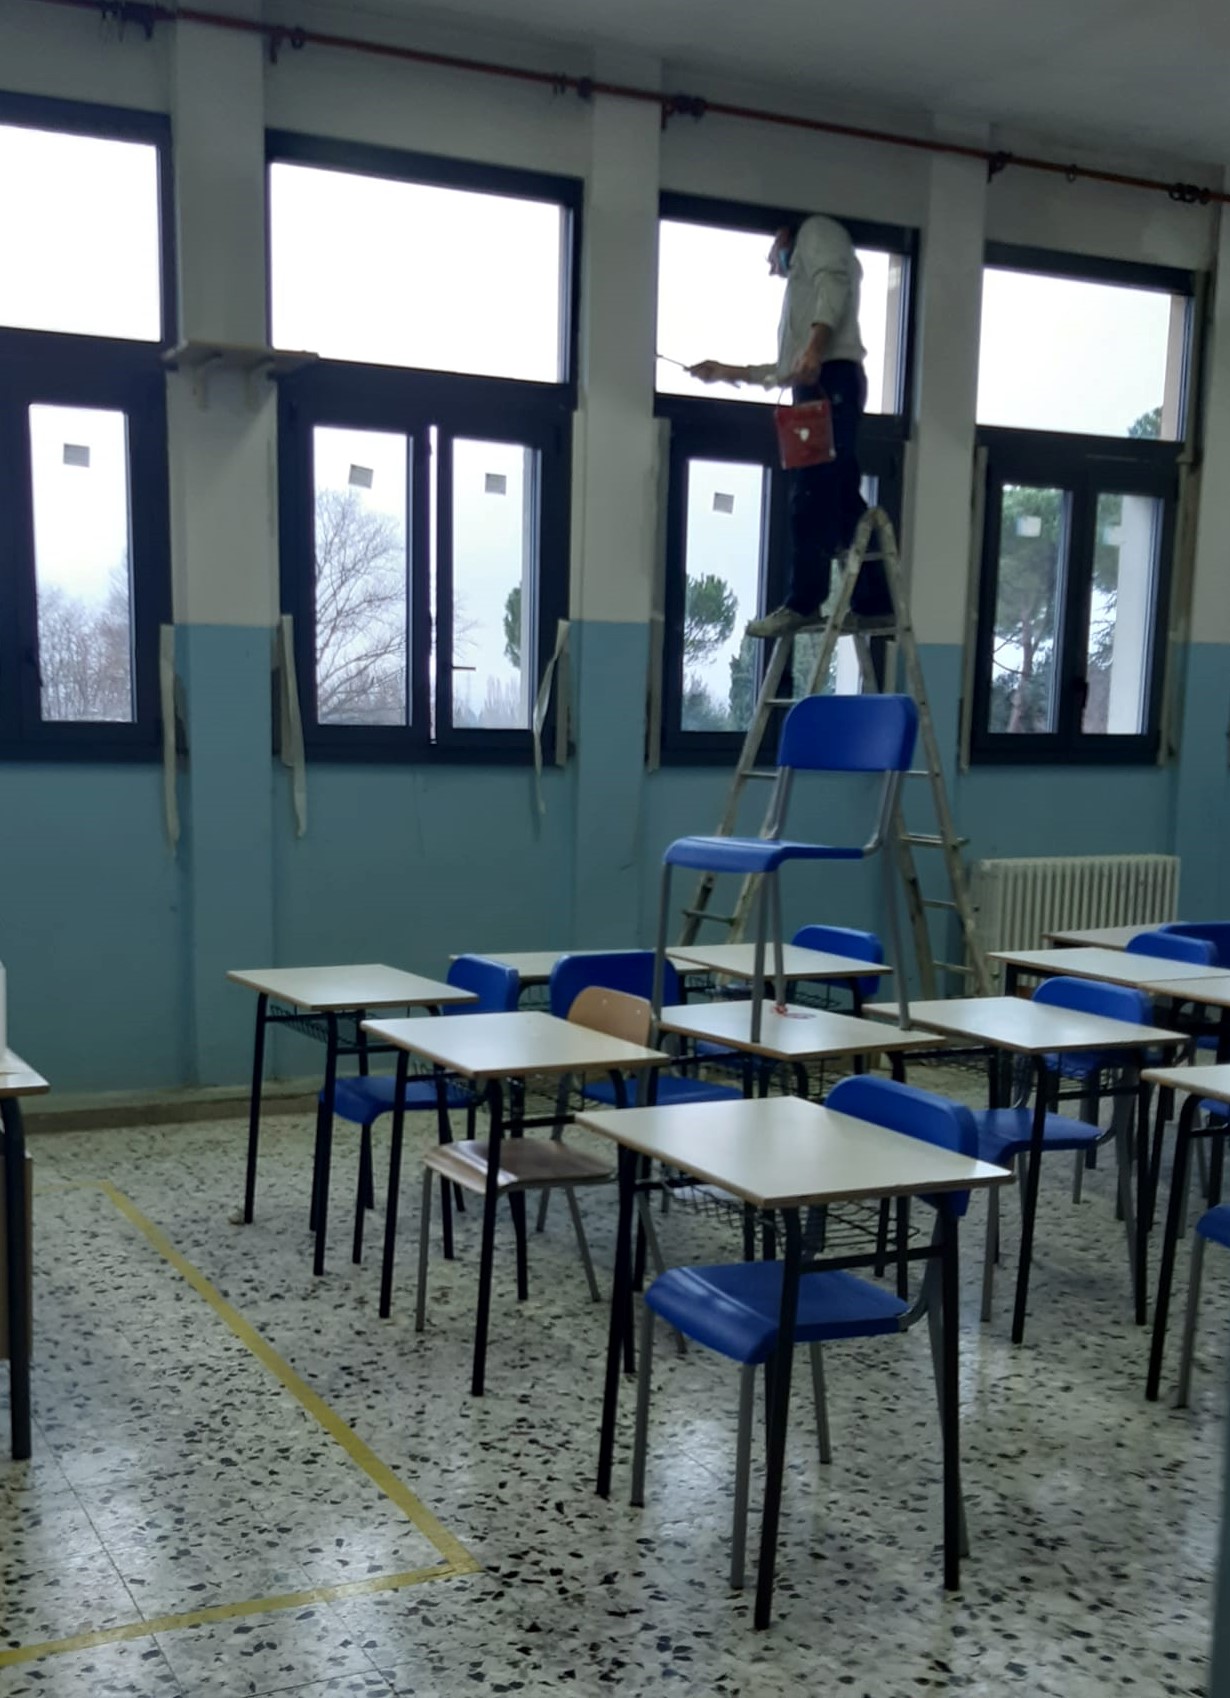 Efficientamento energetico e manutenzione degli edifici scolastici